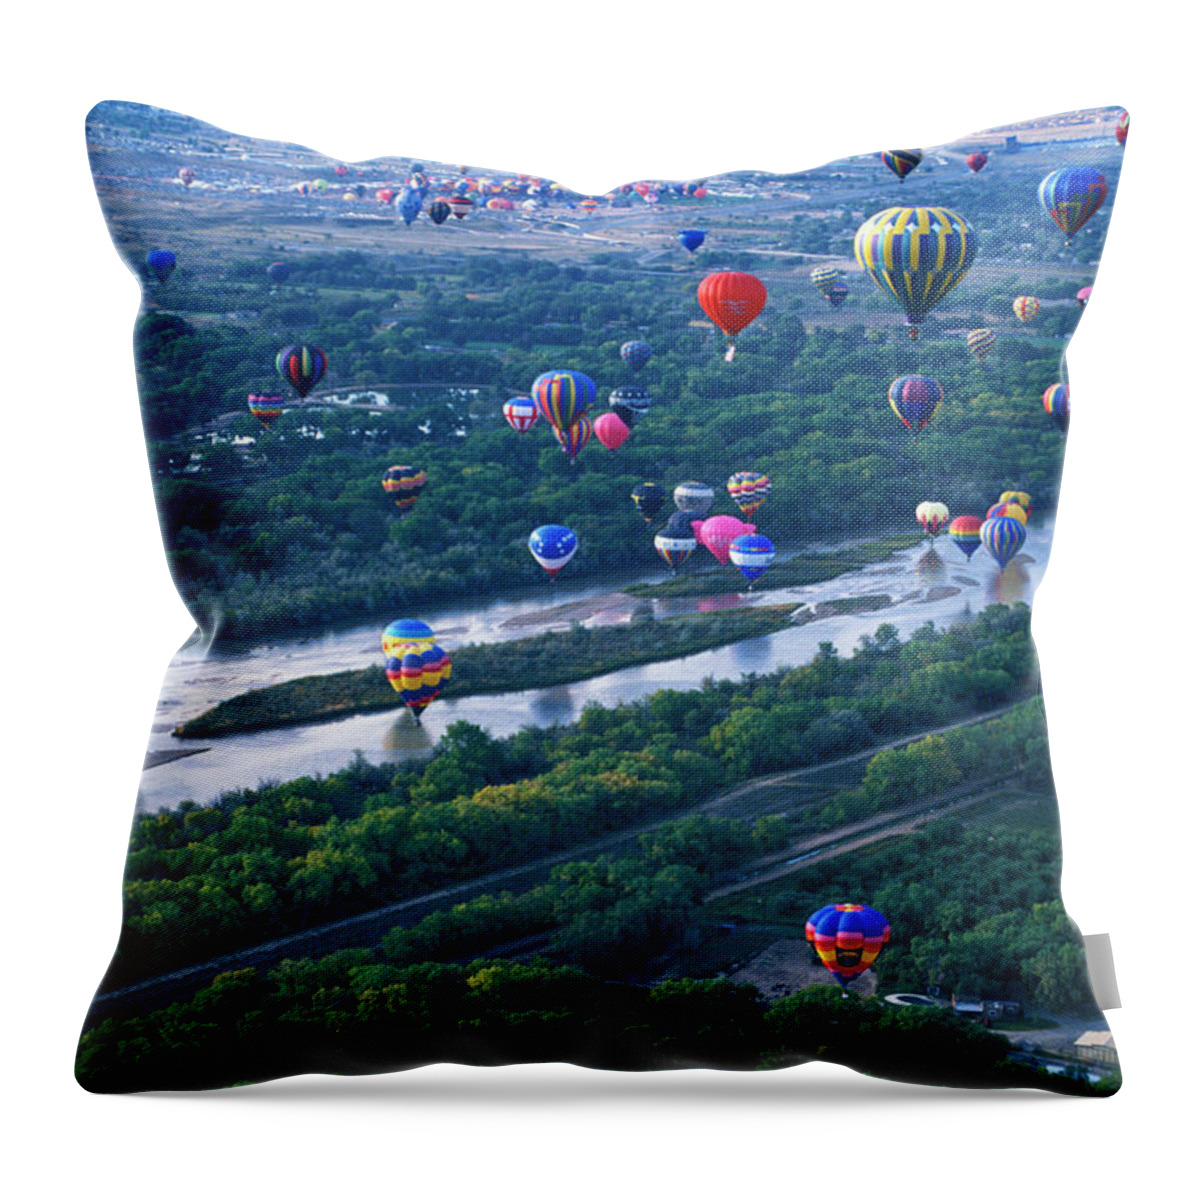 Wind Throw Pillow featuring the photograph International Hot Air Balloon Fiesta by Mark Newman